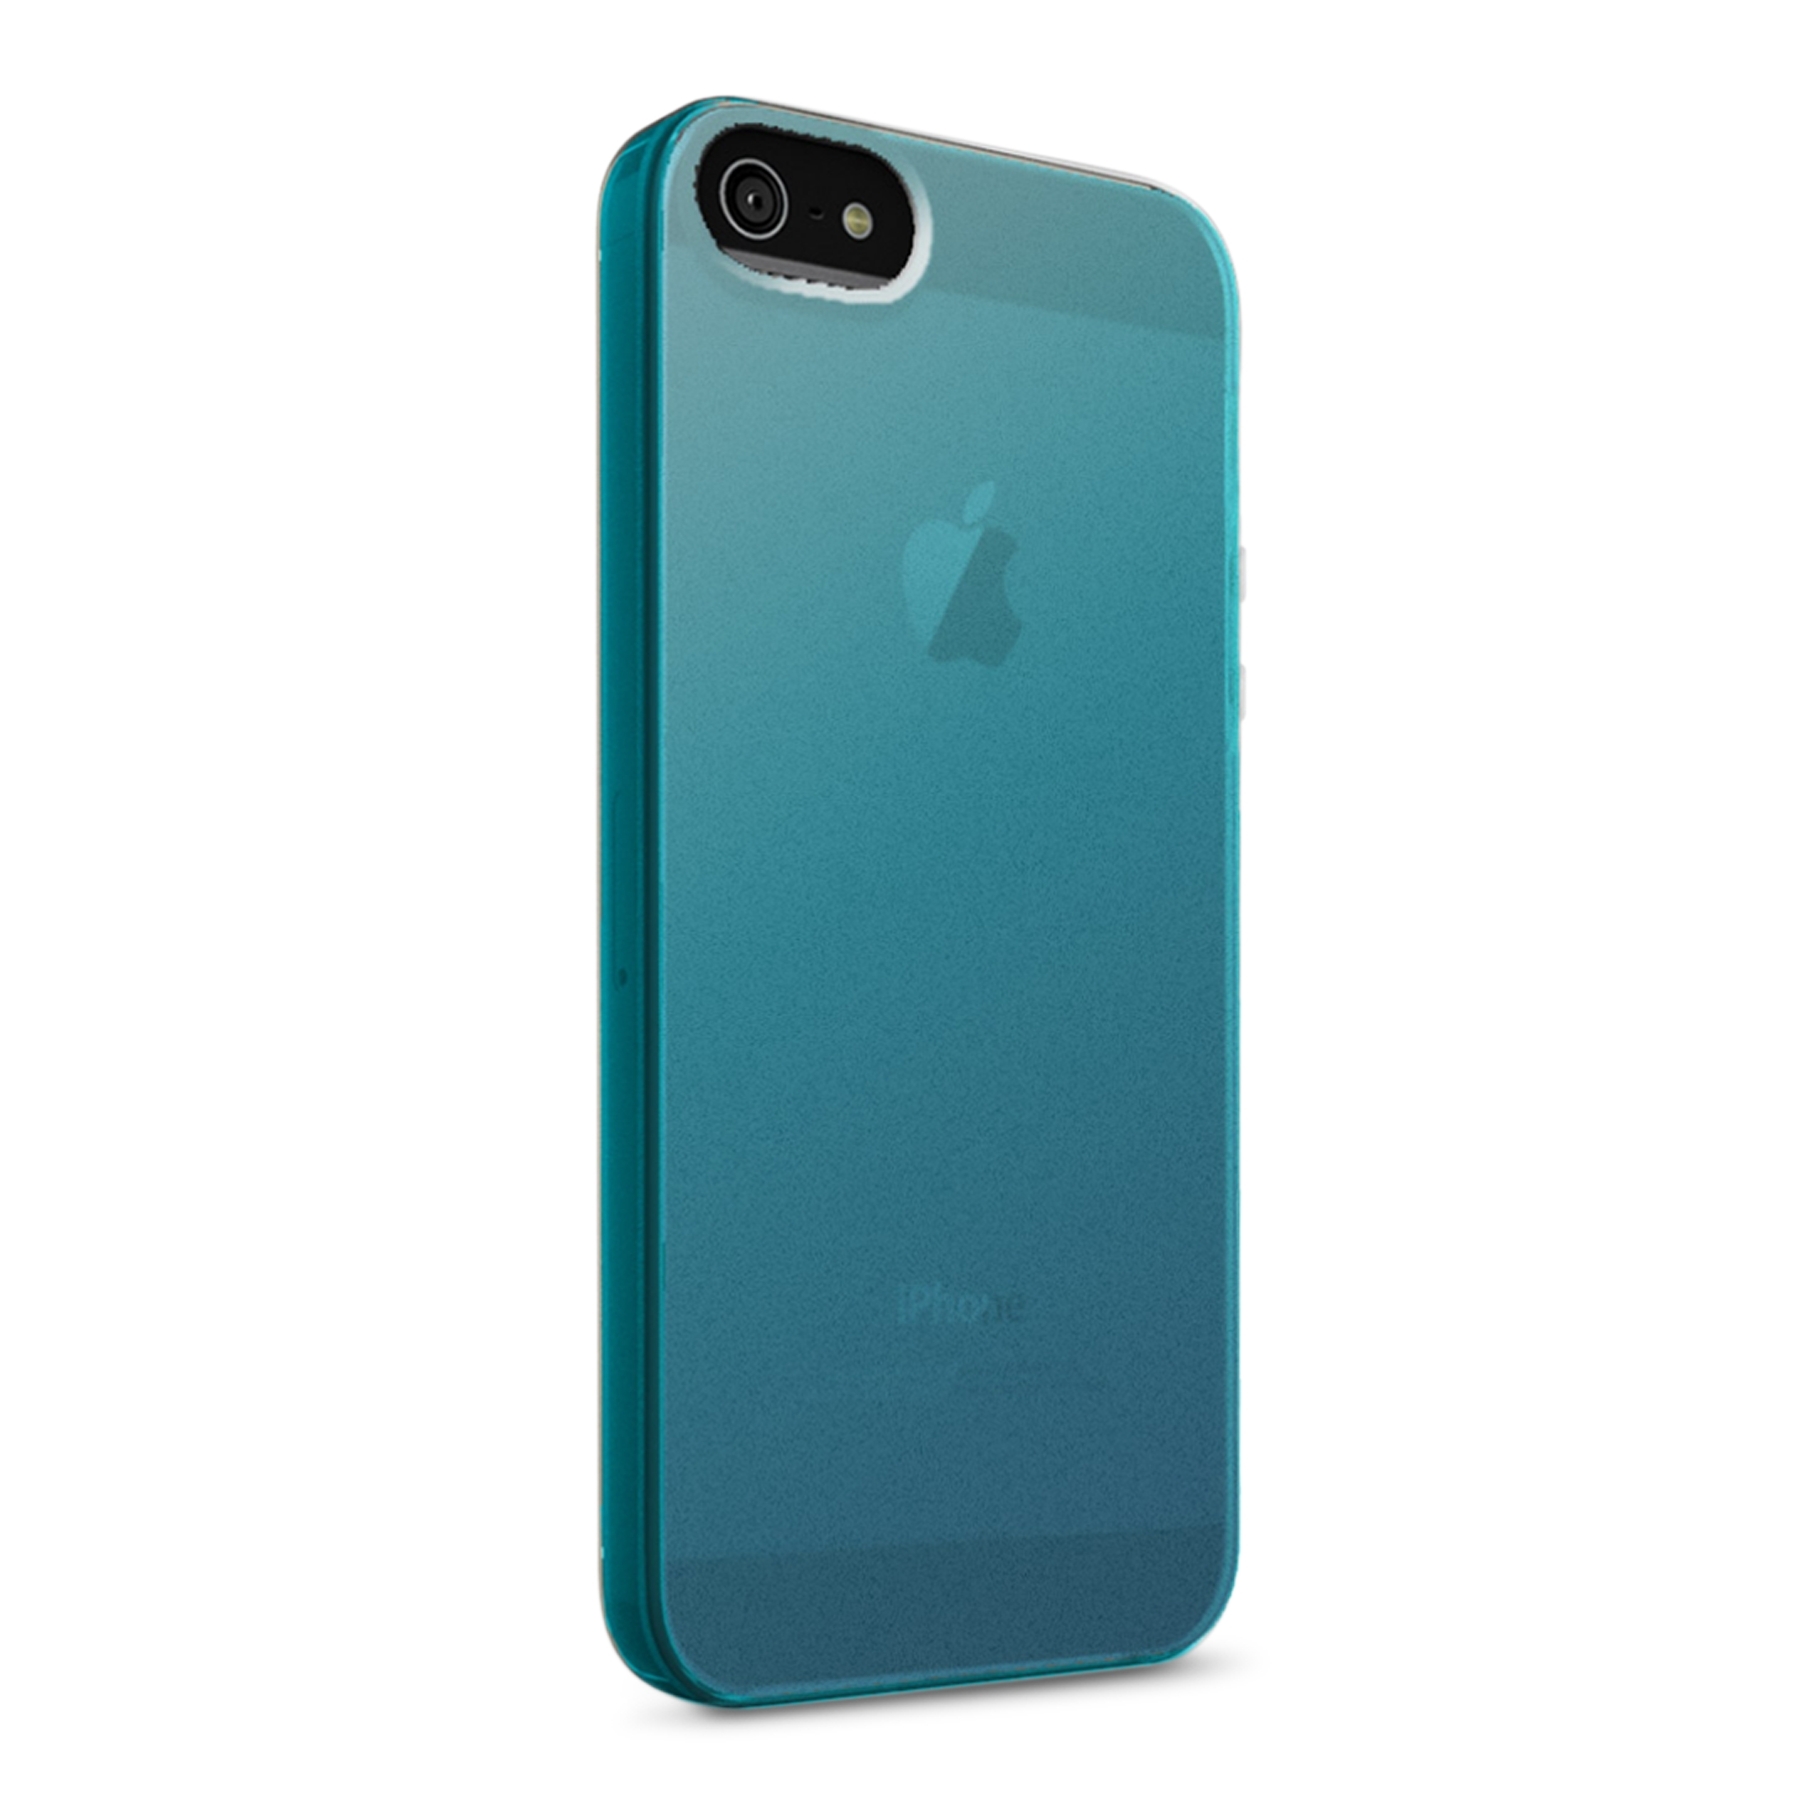 Belkin Micra Shield Matte - поликарбонатов кейс за iPhone 5C (син)